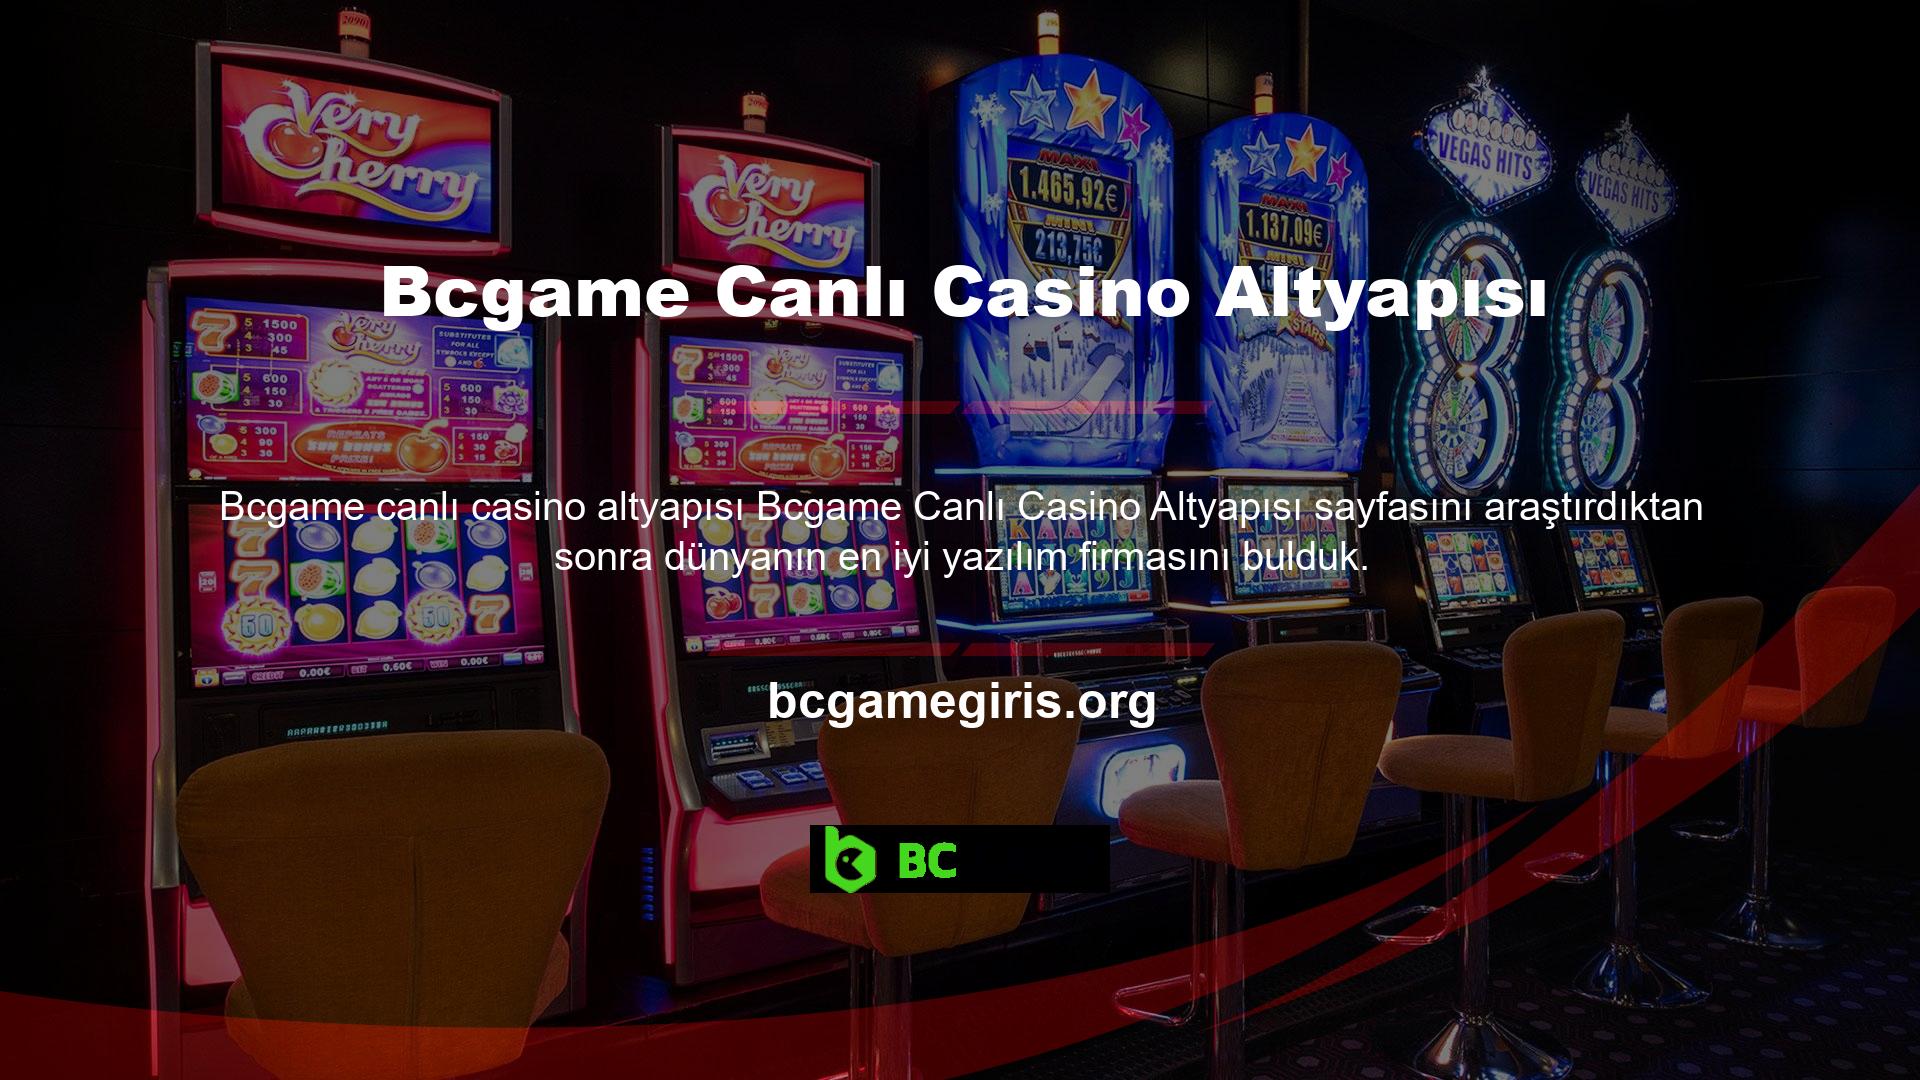 Canlı casino oyunlarında altyapının kalitesi oldukça önemlidir